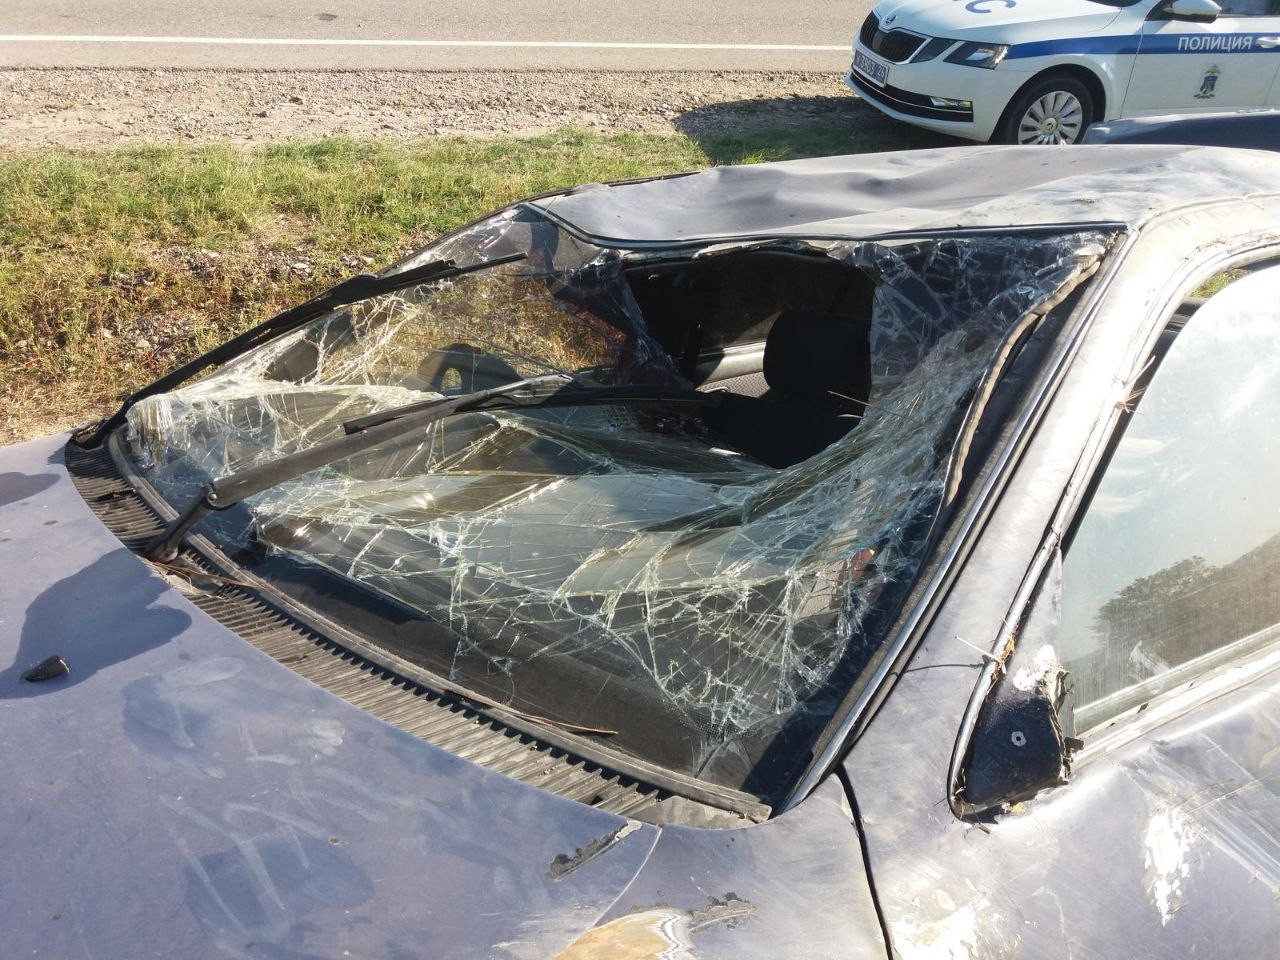 Тяжёлые травмы получил водитель в ДТП на Ставрополье